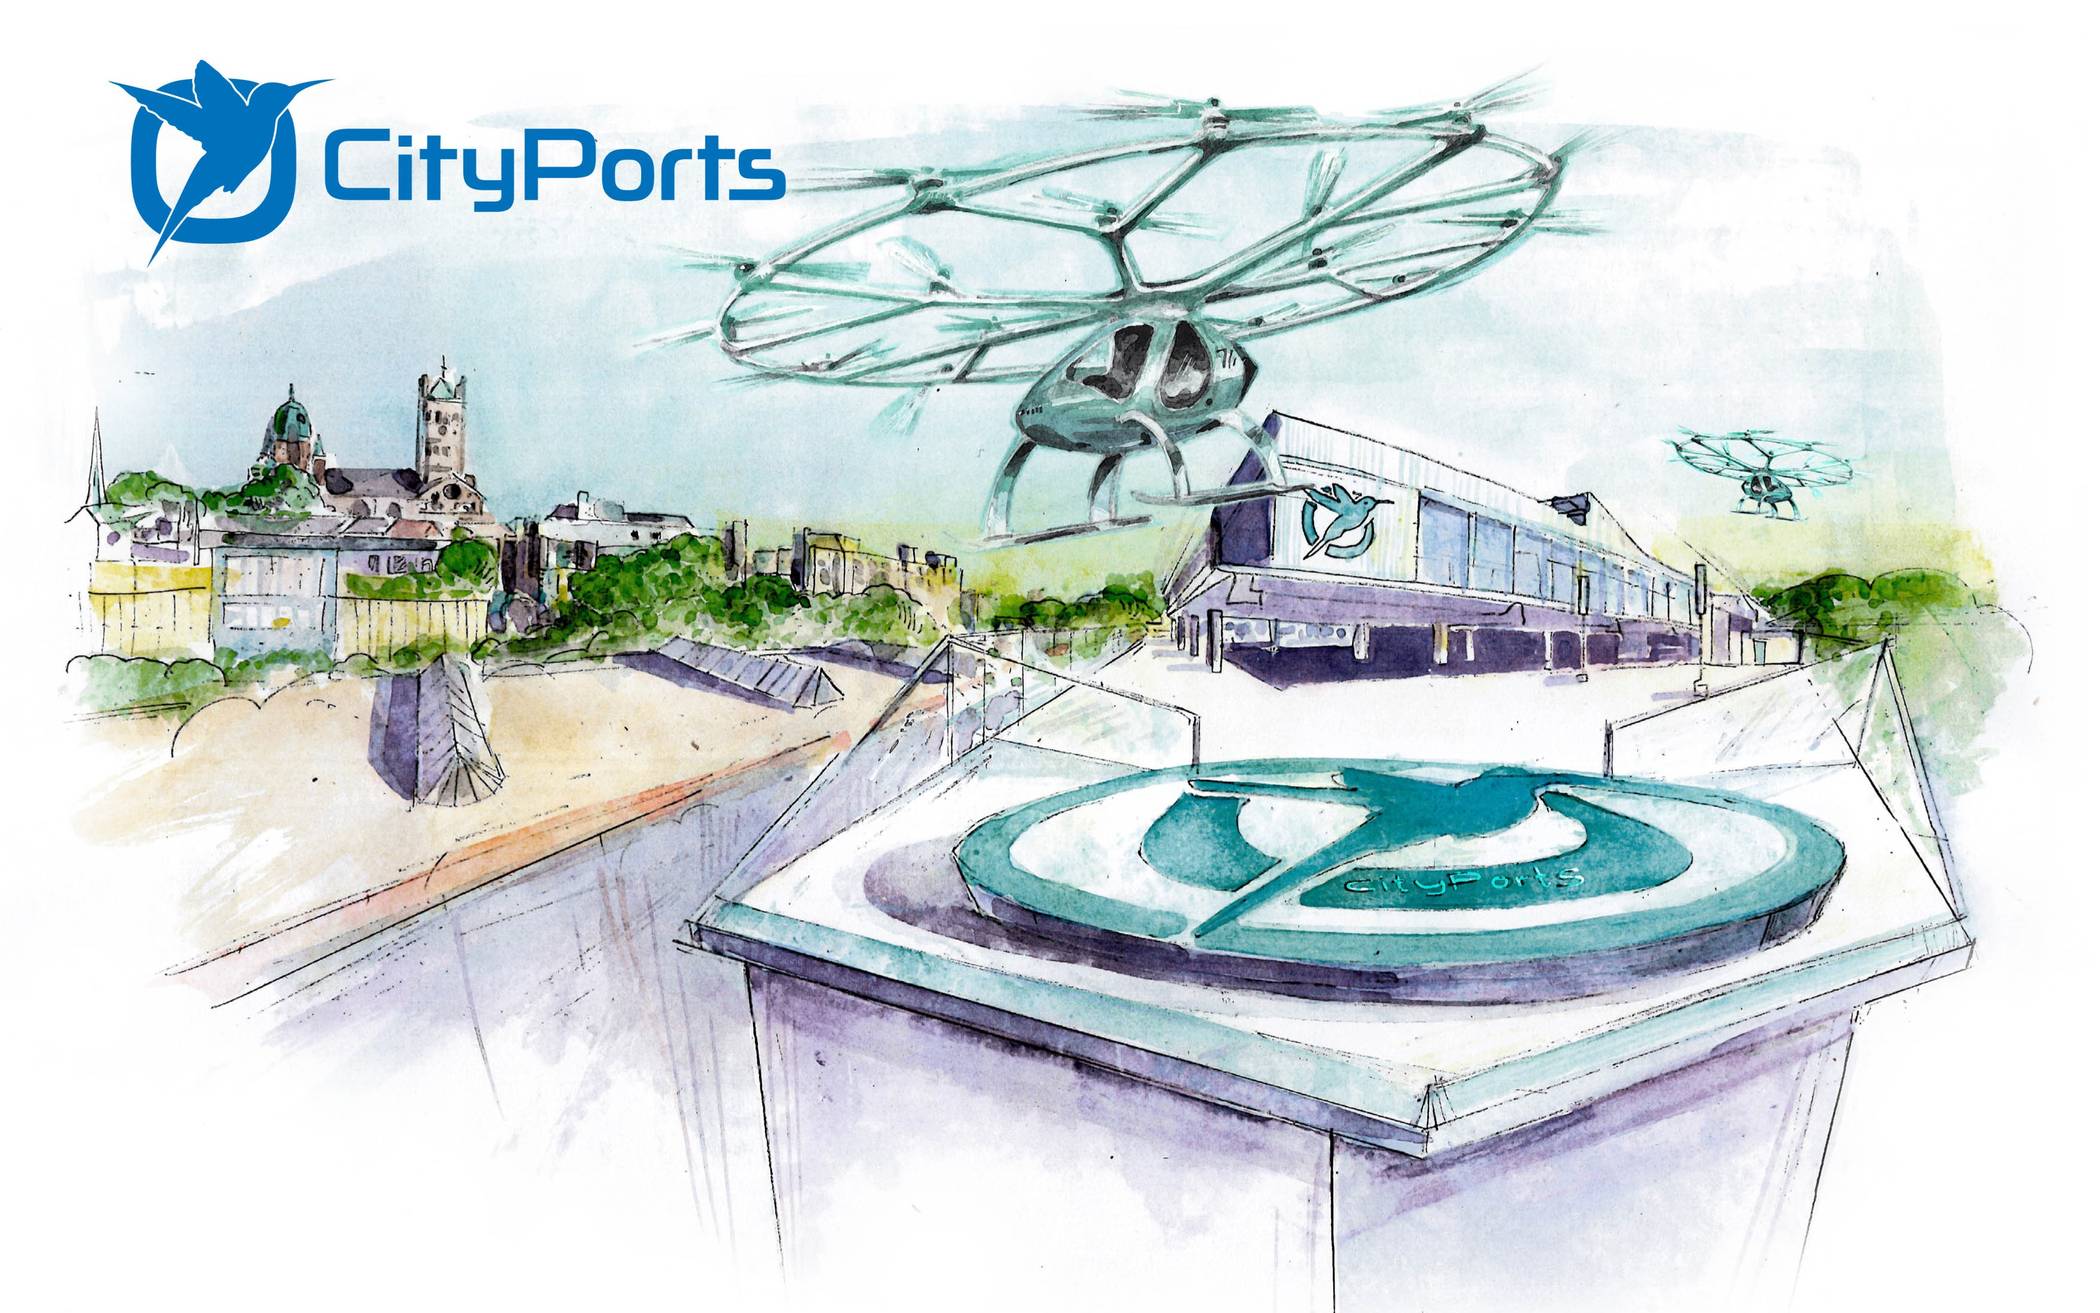  Ein Zukunftsszenario: Das Flugtaxi startet und landet auf dem Rheintor-Parkhaus am Neusser Hafen. 